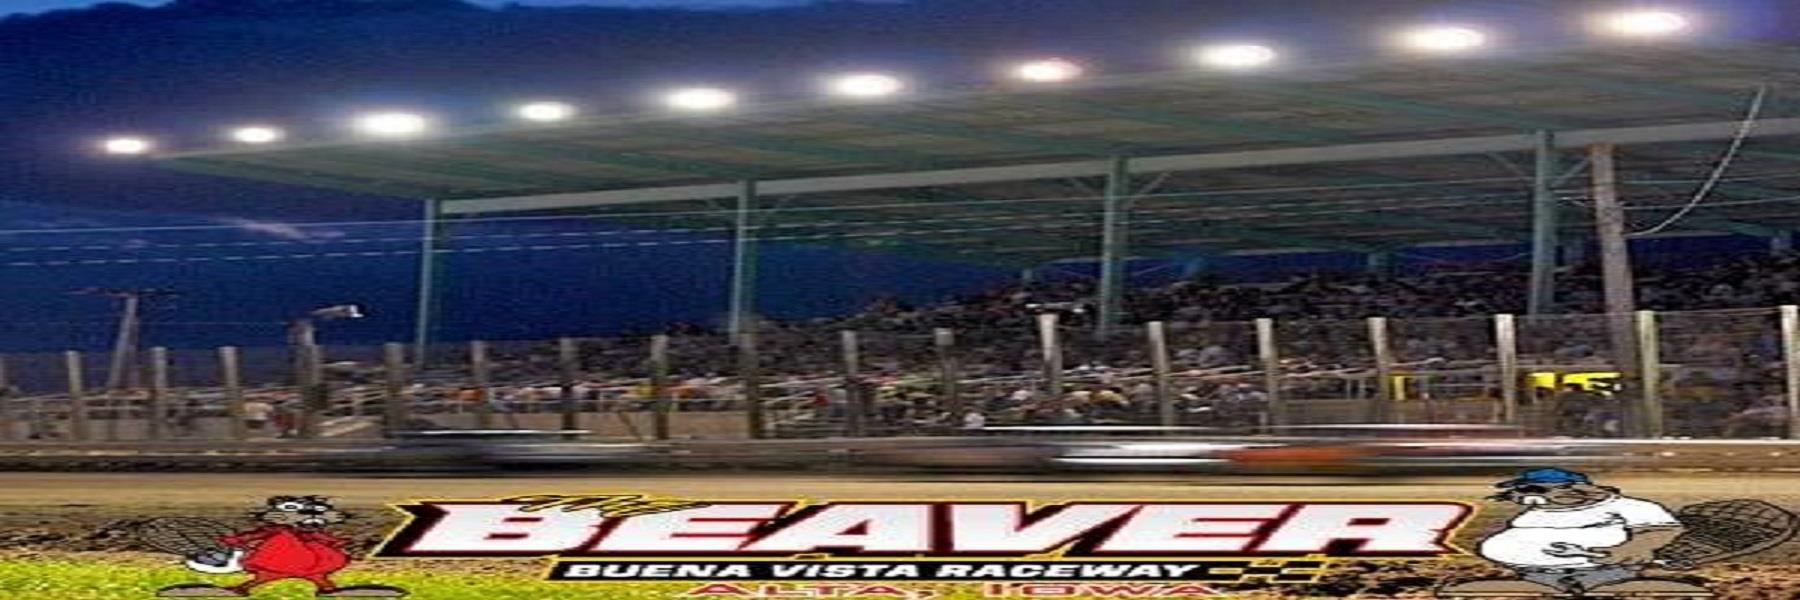 8/3/2022 - Buena Vista Raceway